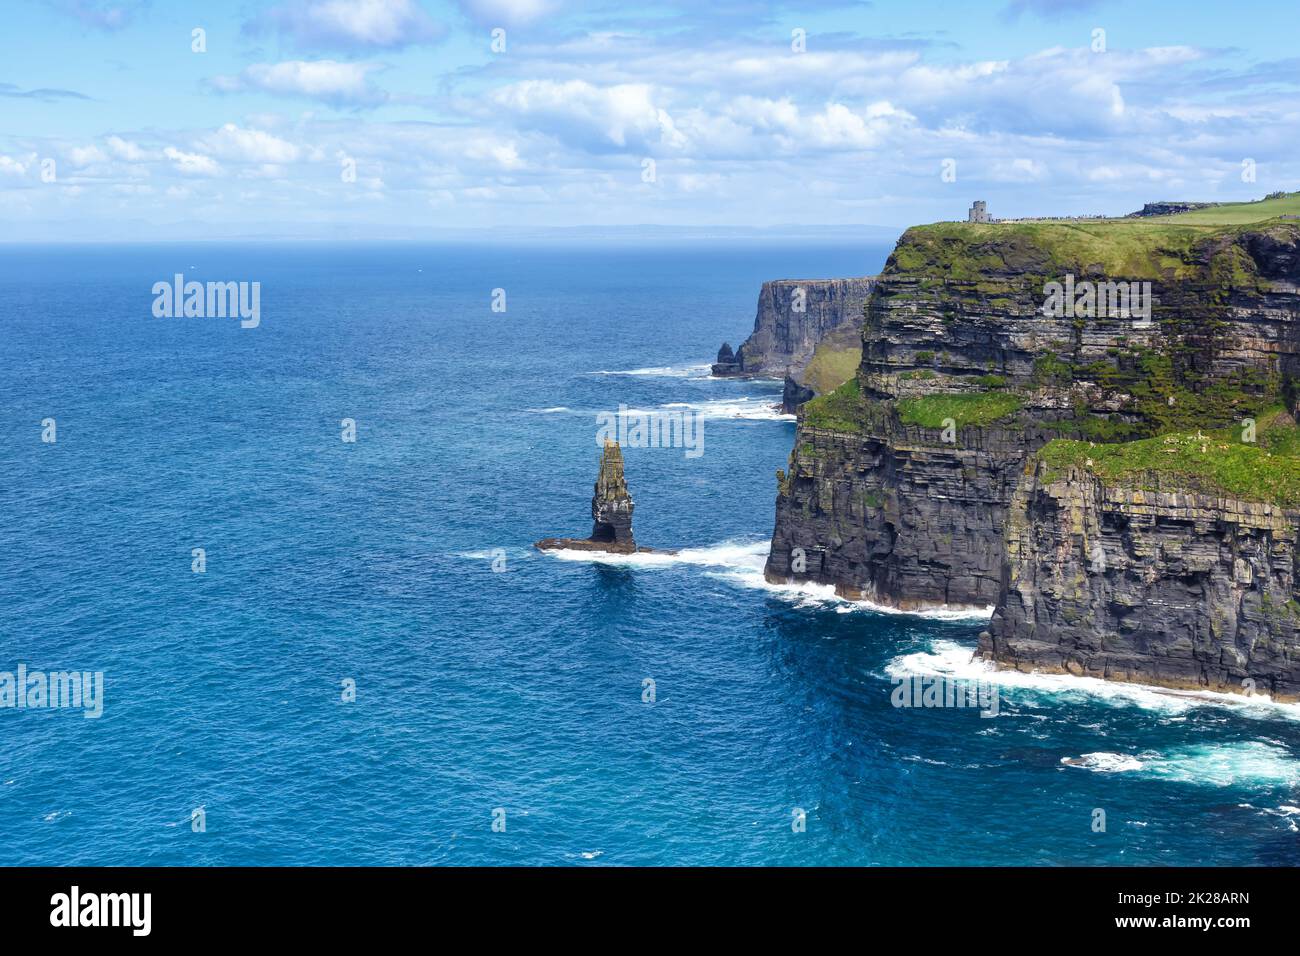 Irlande Cliffs de Moher voyage copyspace copier espace océan Atlantique tourisme de mer Banque D'Images